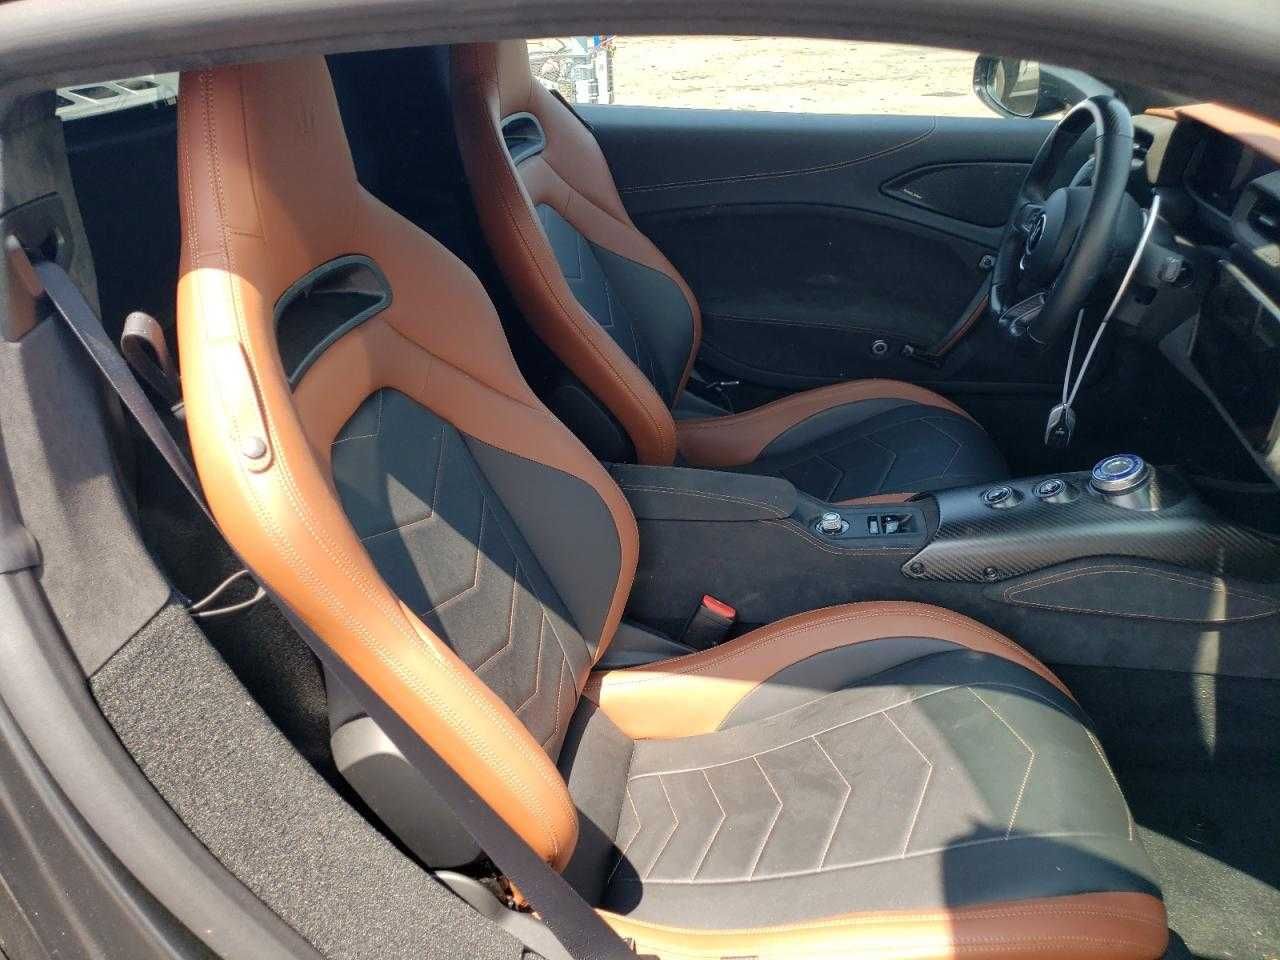 2022 Maserati Mc20